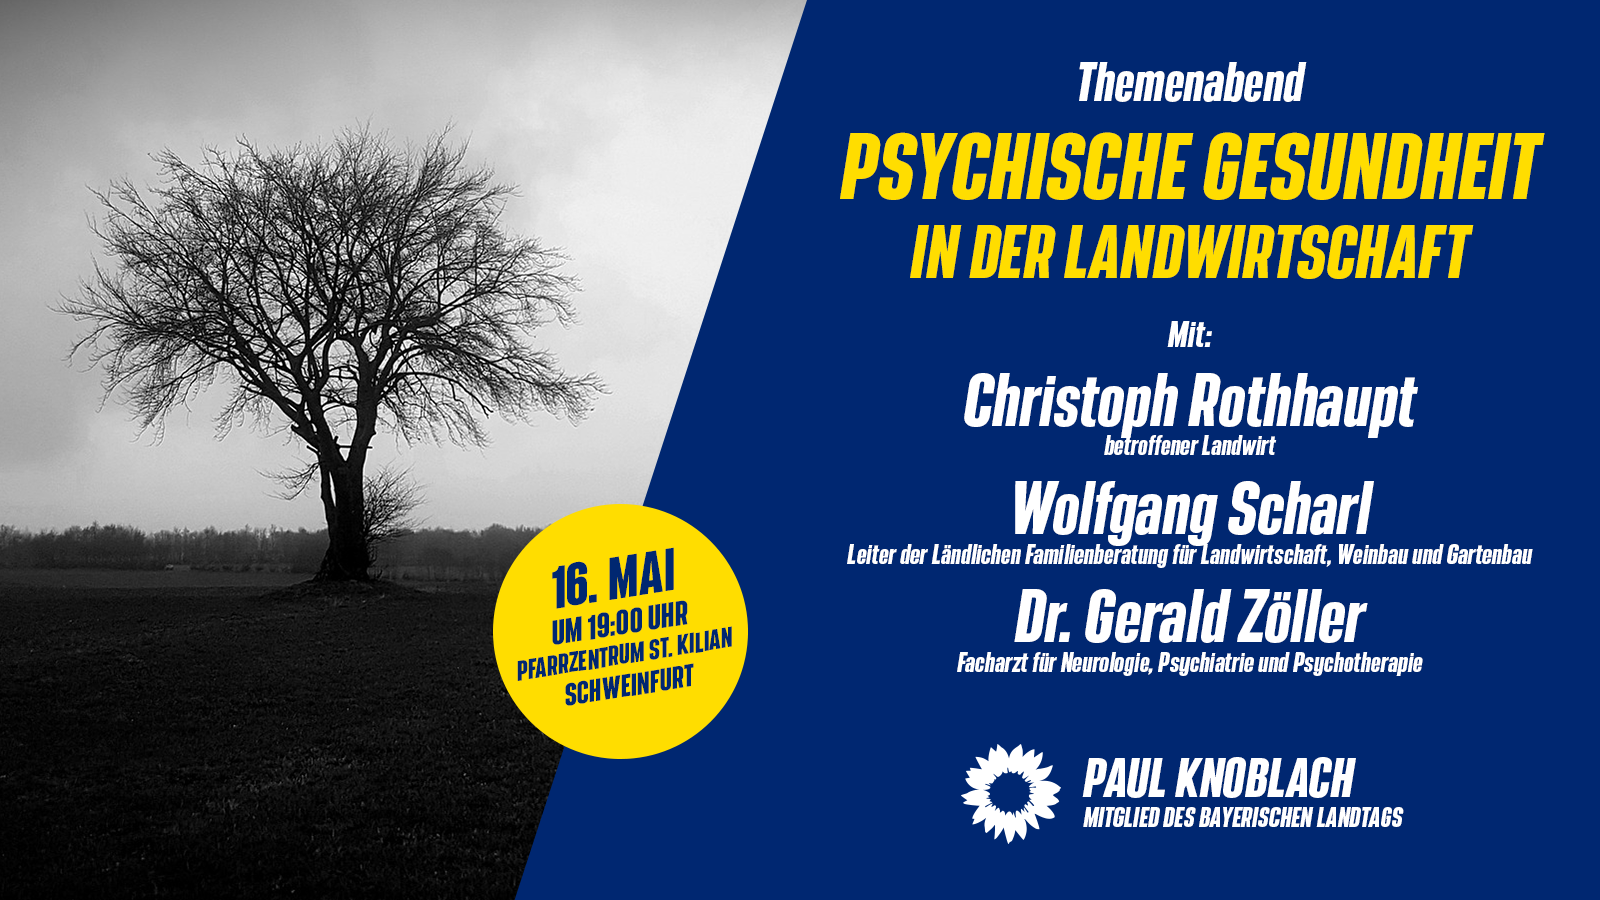 Veranstaltung: Psychische Gesundheit in der Landwirtschaft am 16.05. um 19:00 Uhr im Pfarrzentrum St. Kilian in Schweinfurt.